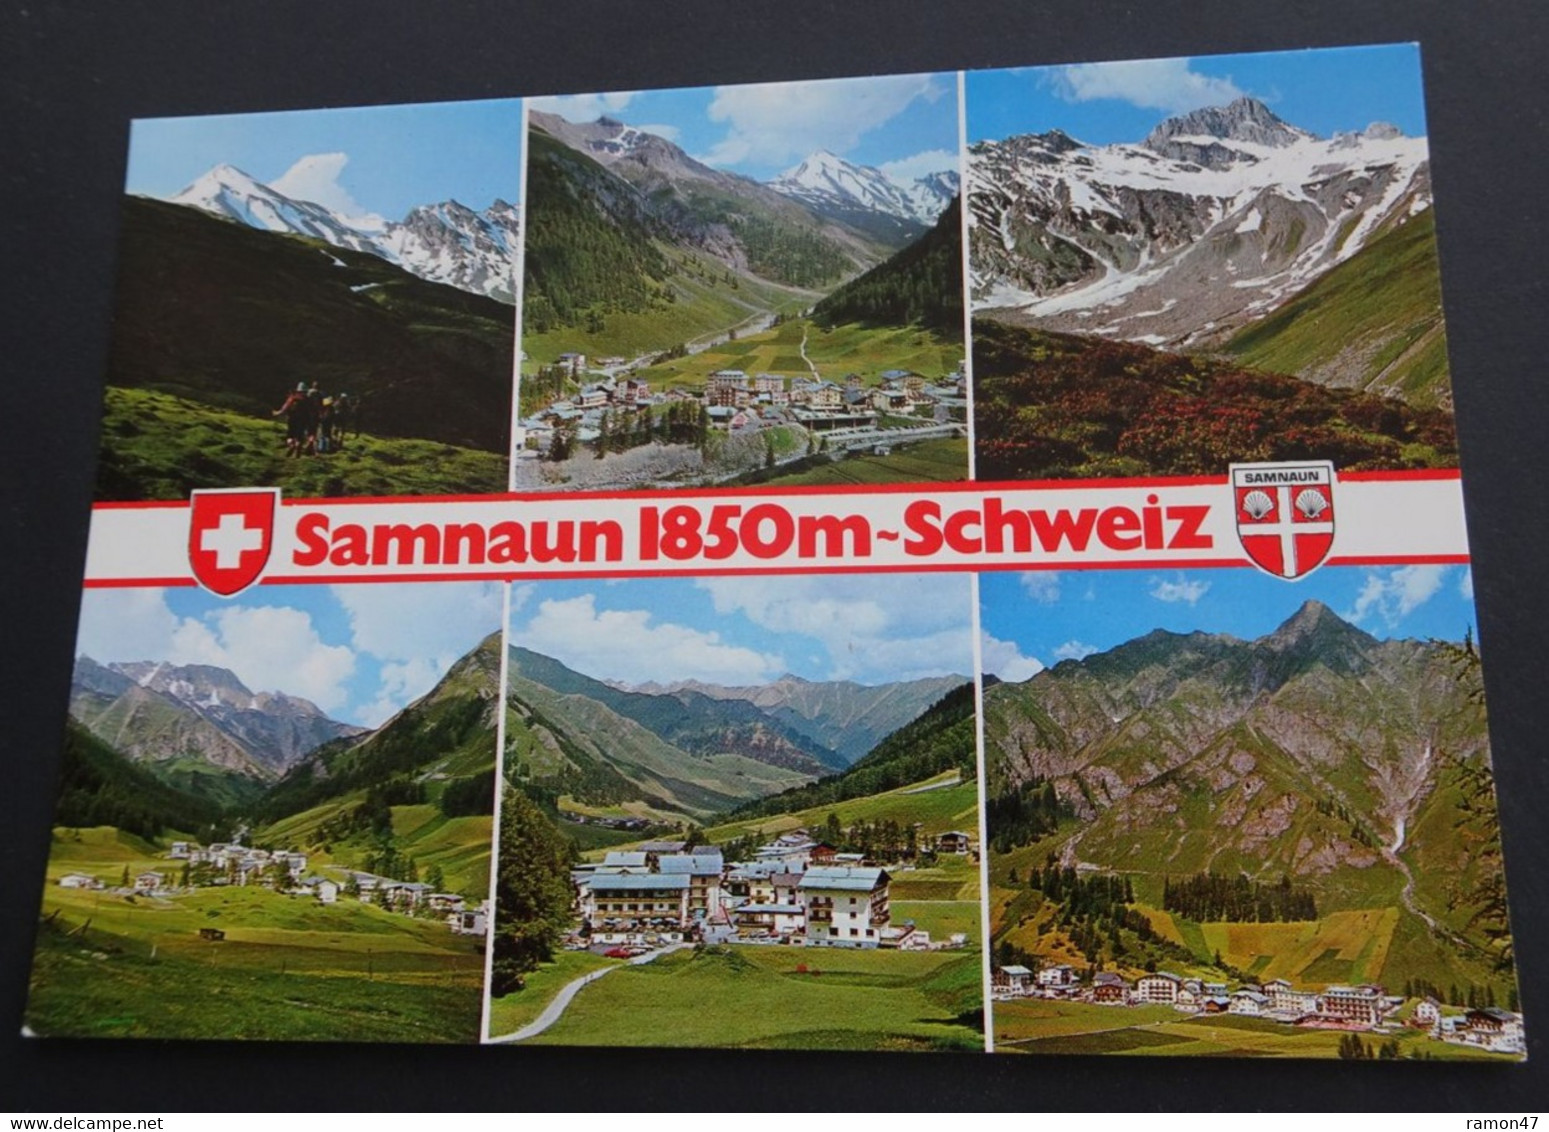 Samnauntal 1850 M - Schweiz - Rudolf Mathis, Silvrettaverlag, Landeck, Tirol - # 3266 - Samnaun